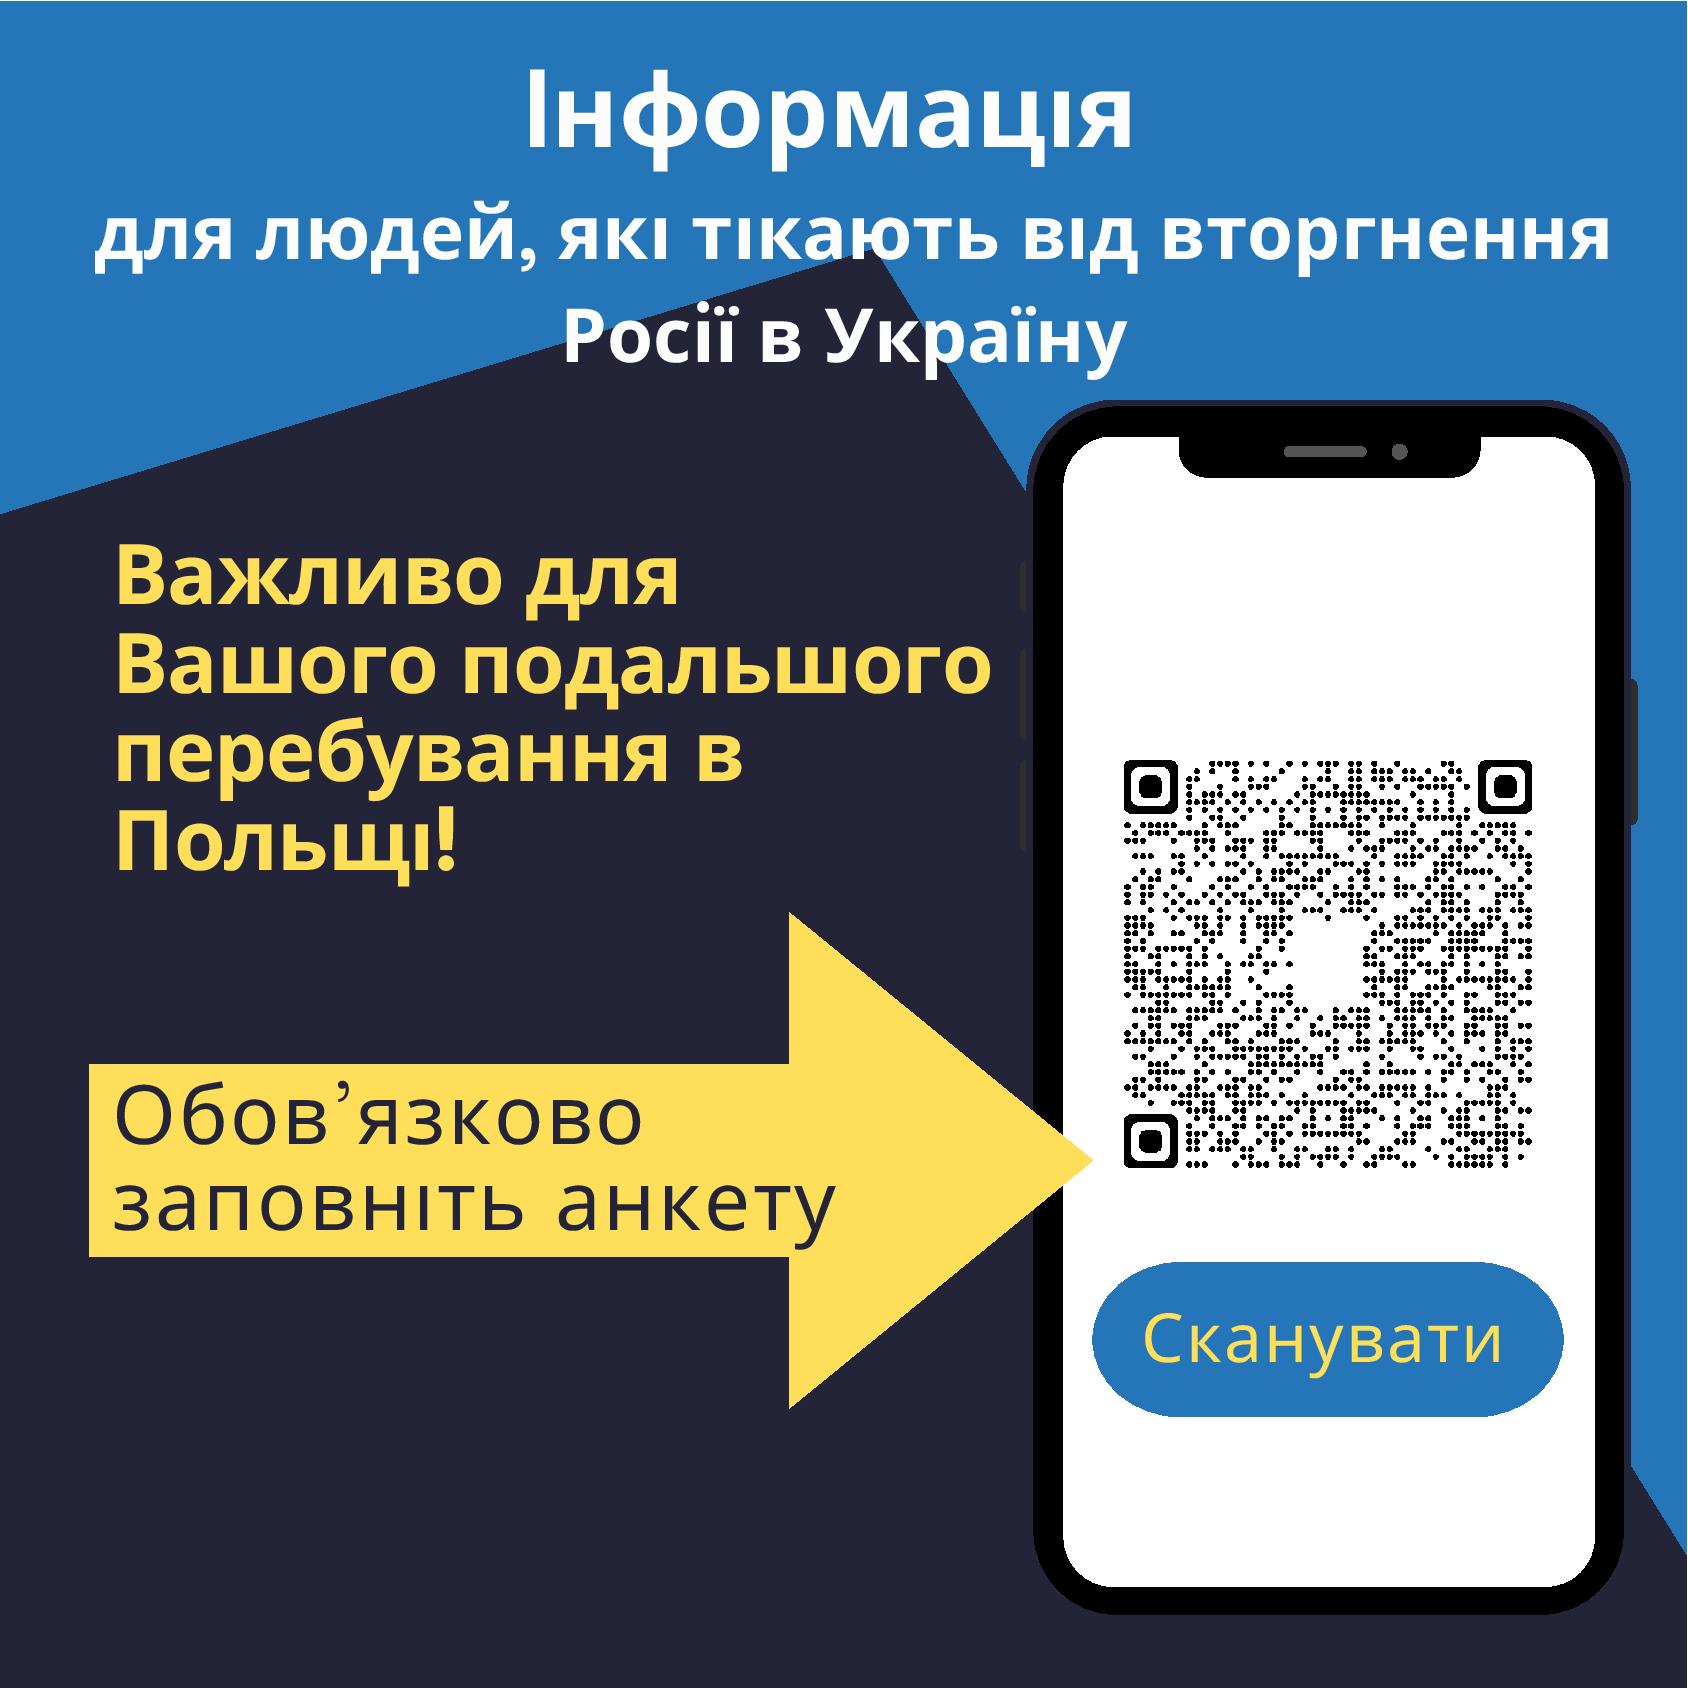 Ankieta do wypełnienia przez obywateli Ukrainy plakat informujący 